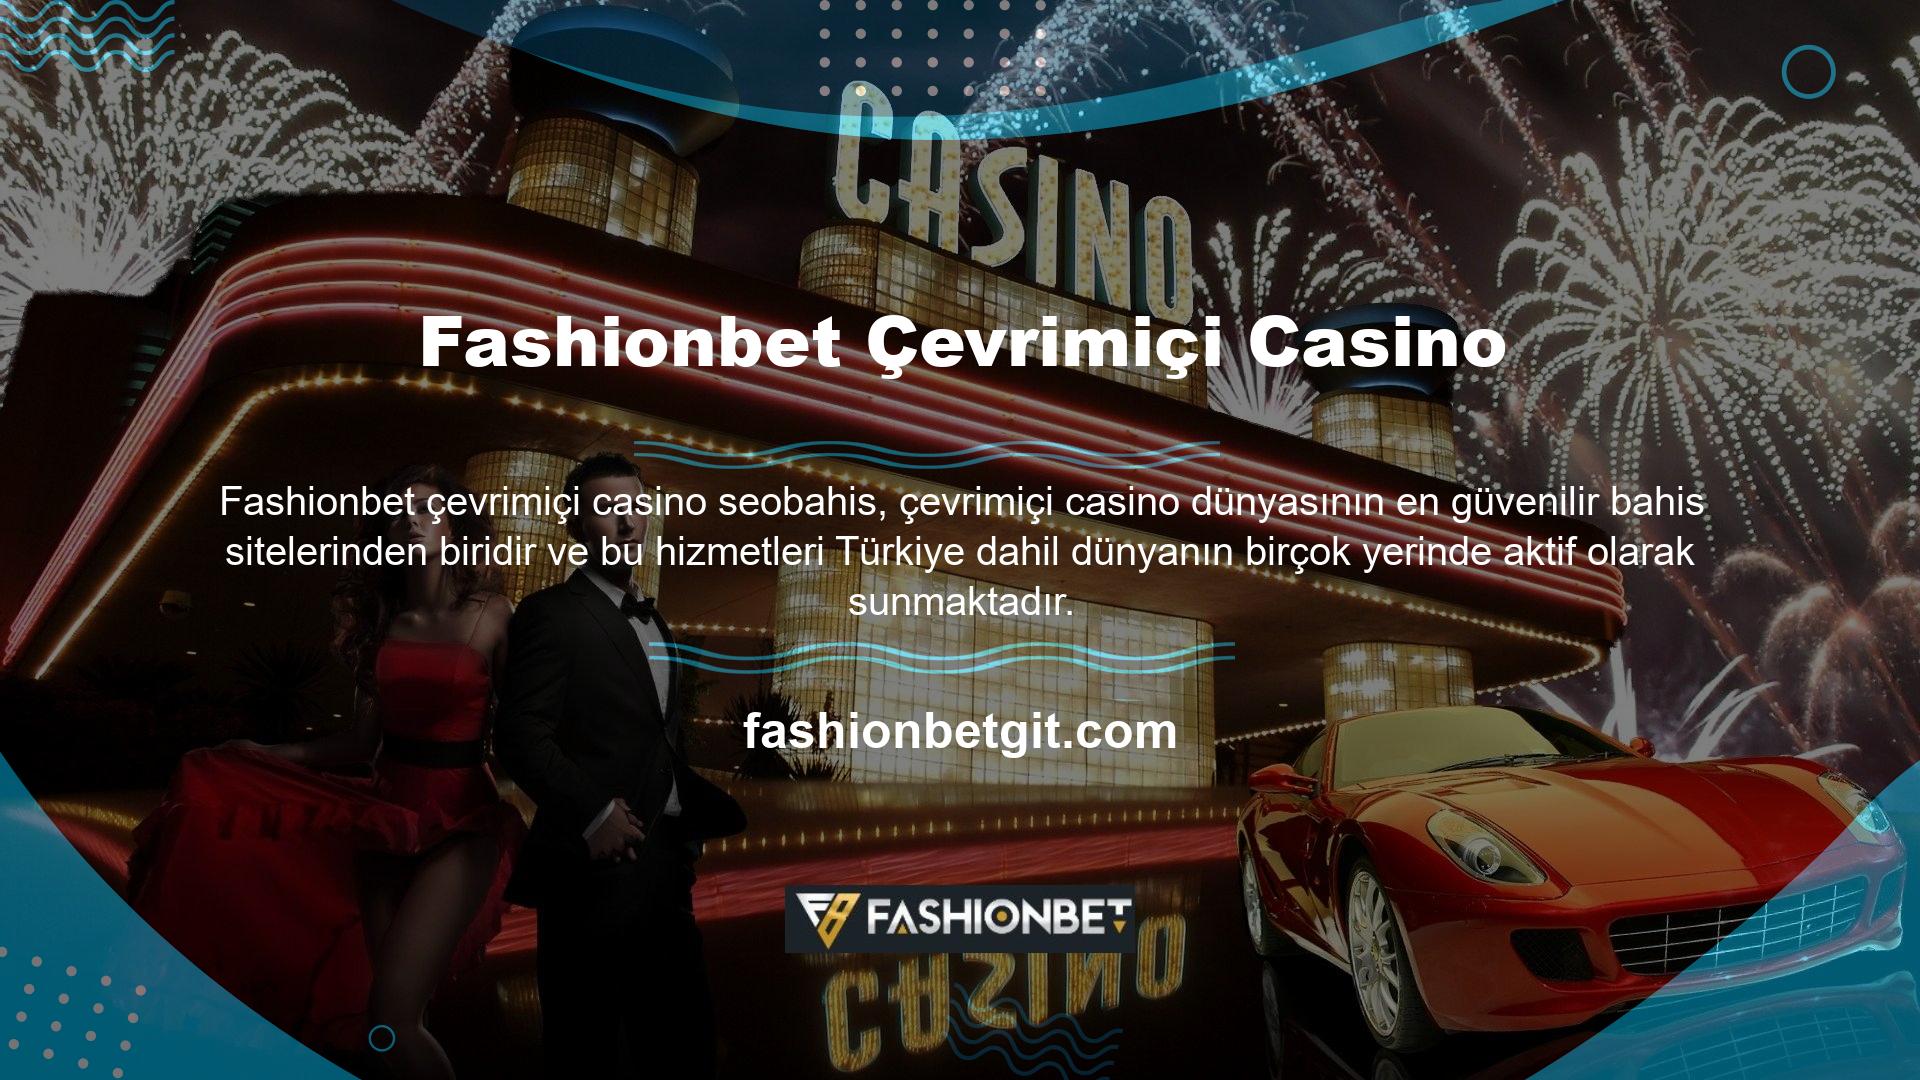 Türk online casino sektörünün güvenilirlik sorunlarını tamamen ortadan kaldıran Fashionbet web siteleri, Türkiye'nin ve dünyanın birçok bölgesine fırsatlar sunması nedeniyle popüler casino sektöründe 1